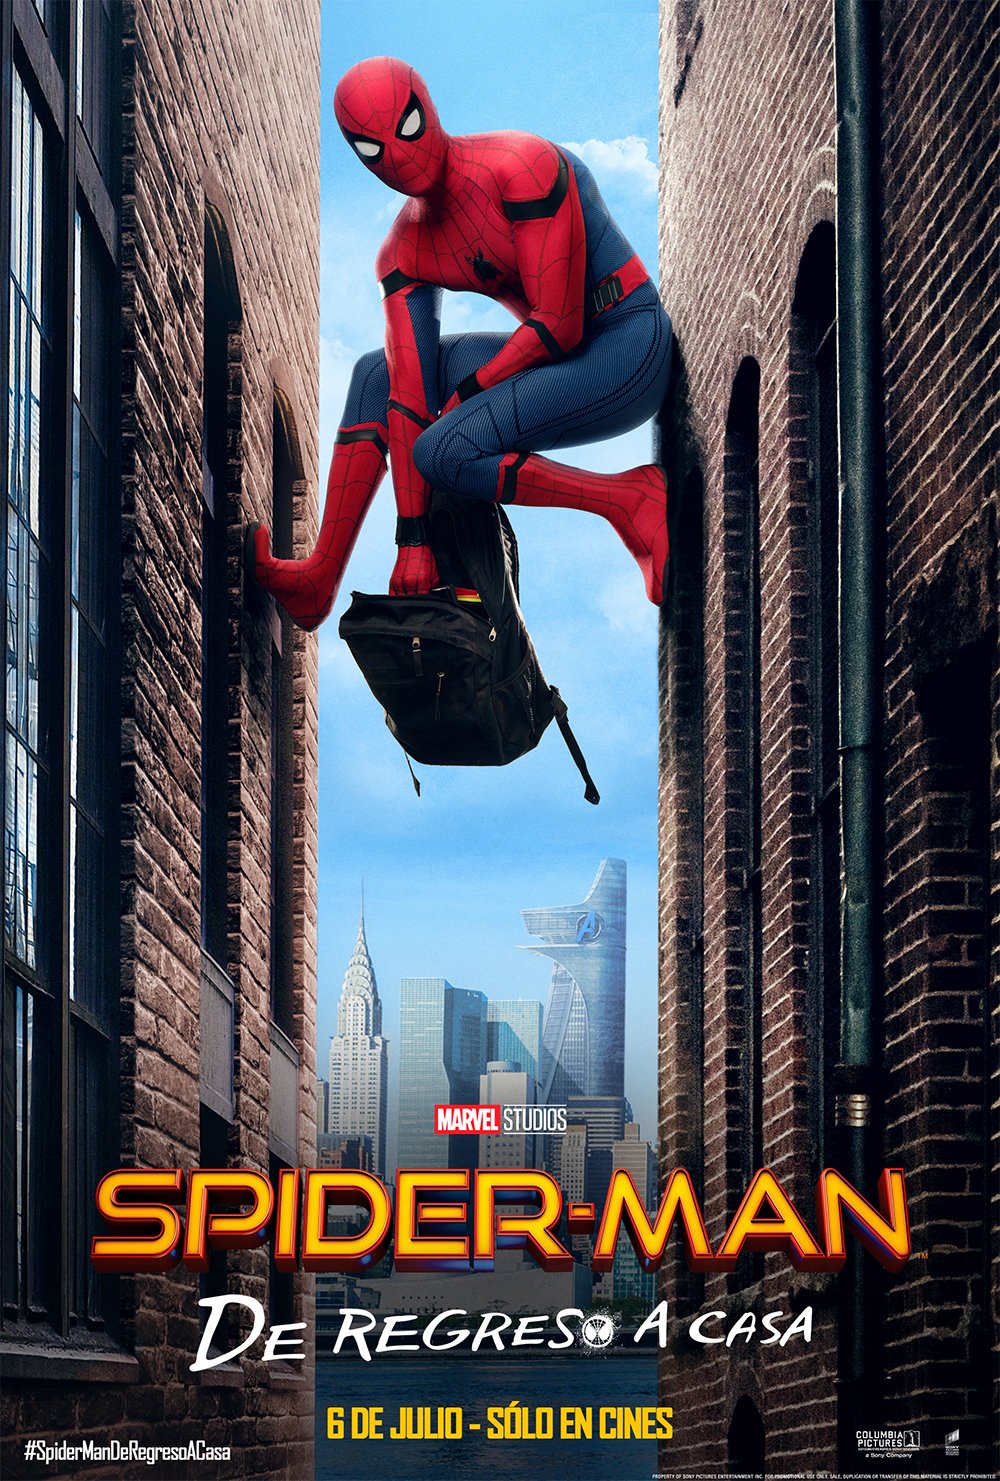 Cine “Spiderman De regreso a casa”